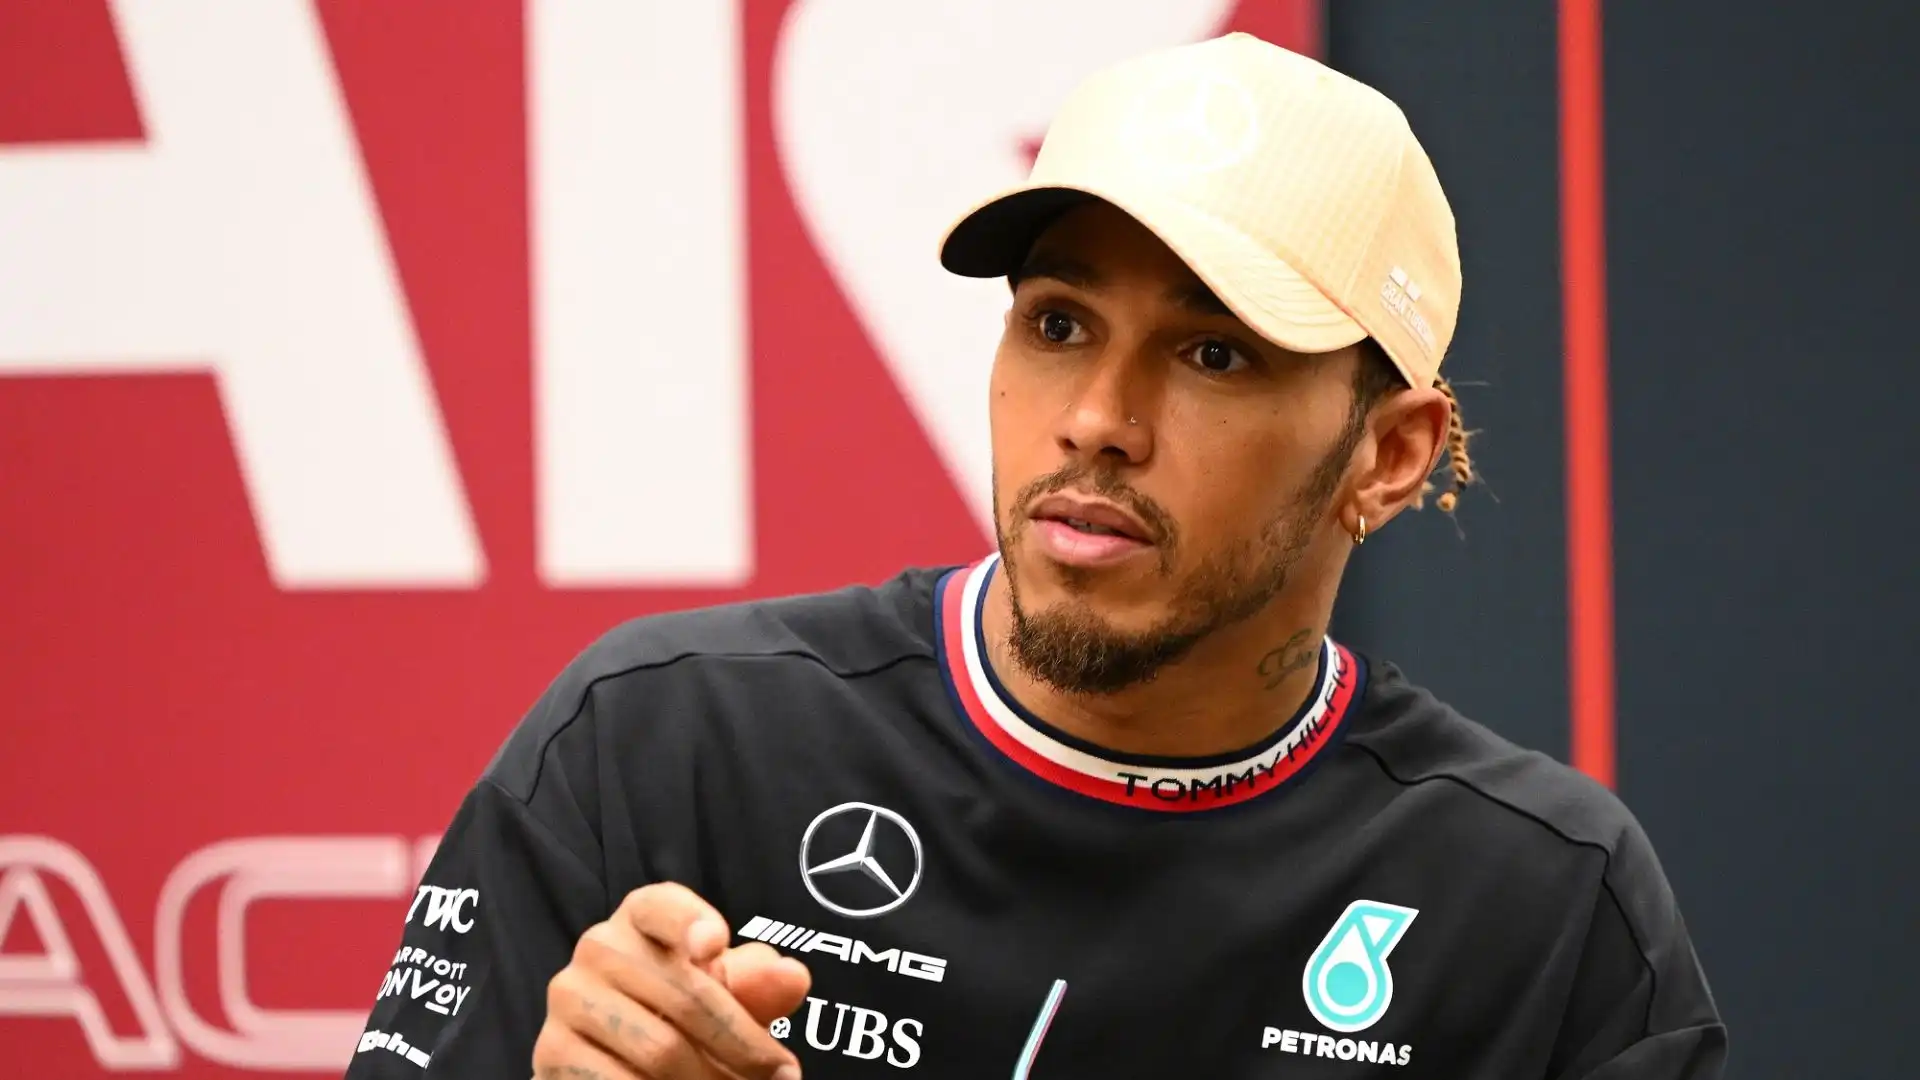 Lewis Hamilton occupa il terzo posto nella classifica piloti di Formula 1: in questo Mondiale ha finora ottenuto cinque podi